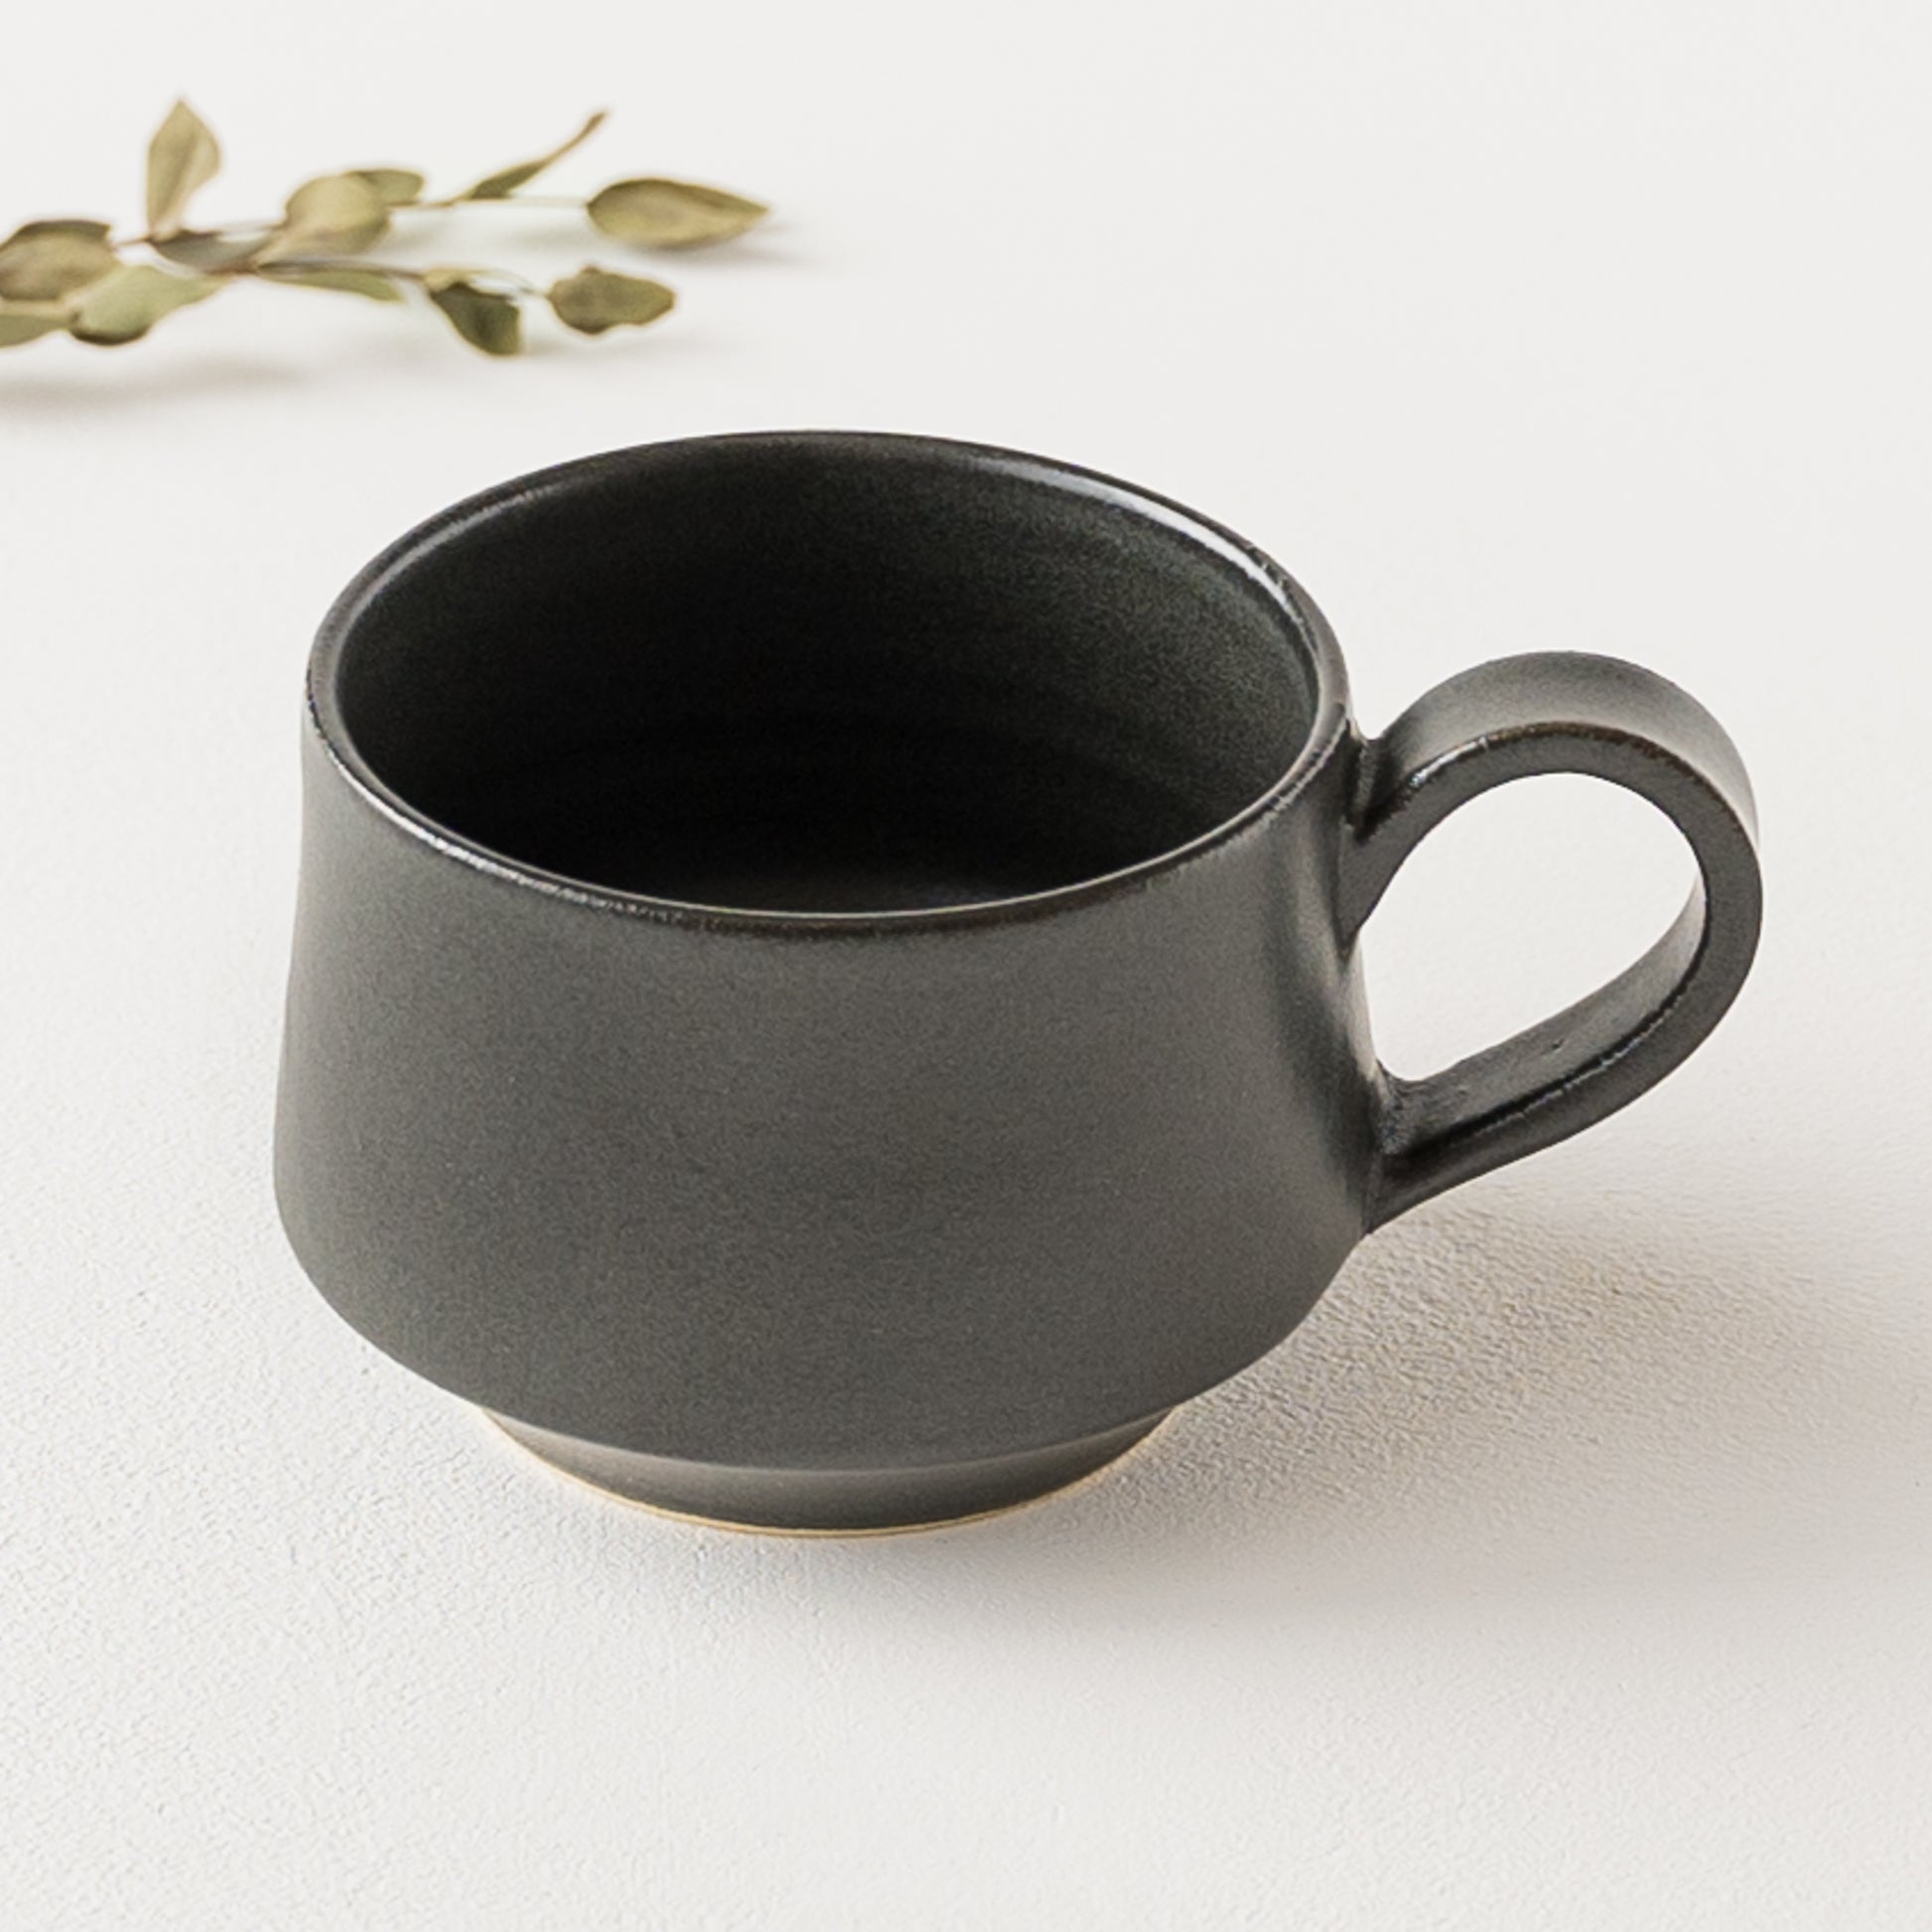 ほっと一息タイムが楽しくなるyoshida potteryのコーヒーカップ